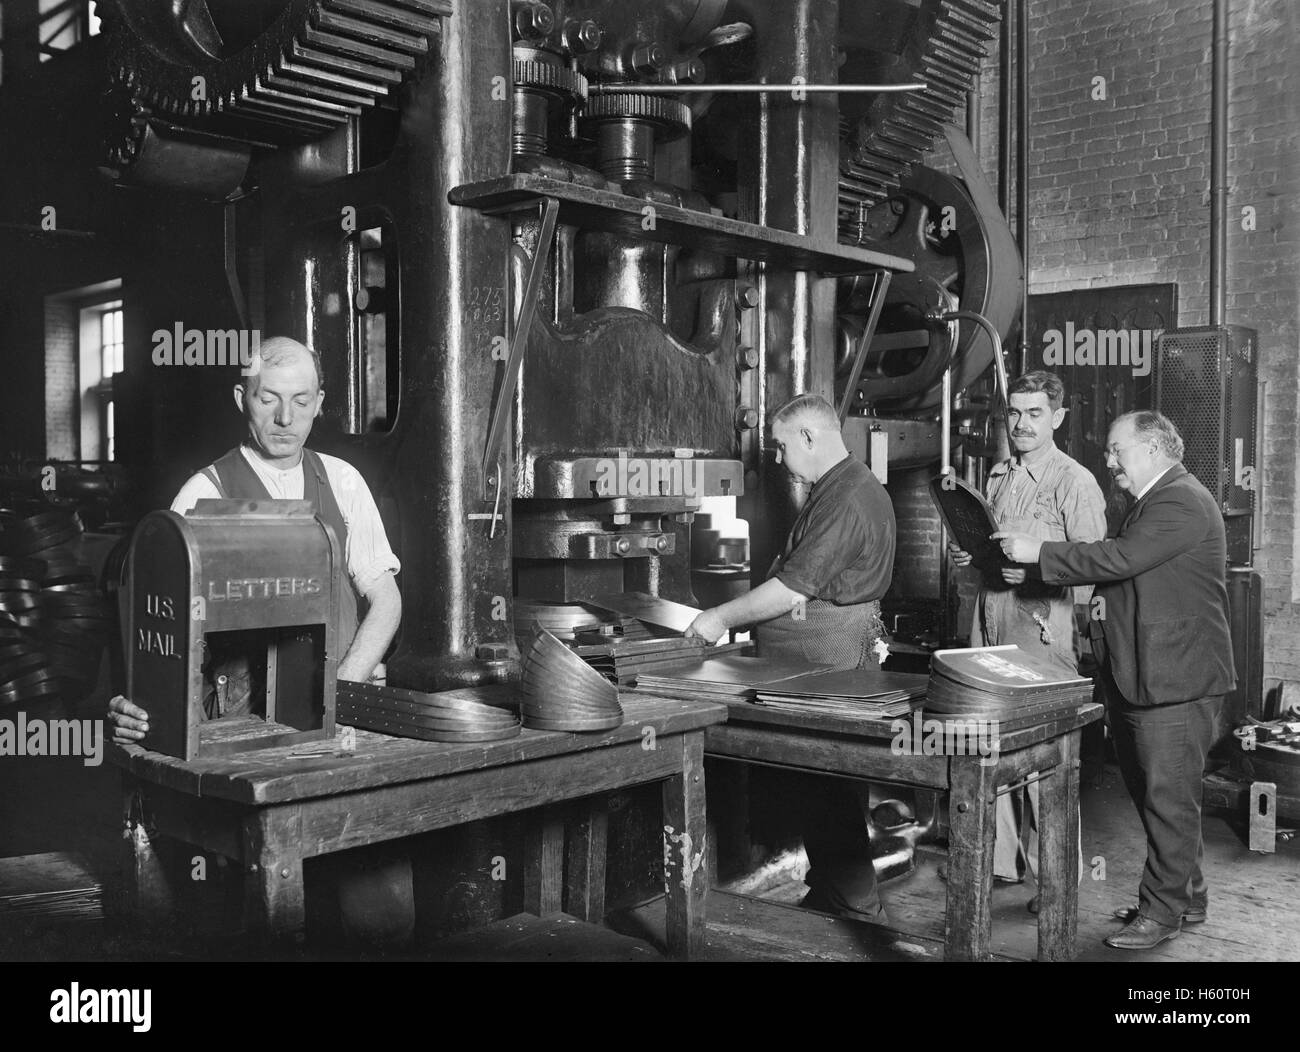 Los trabajadores que buzones, Washington Navy Yard, Washington DC, EE.UU., National Photo Company, noviembre de 1922 Foto de stock